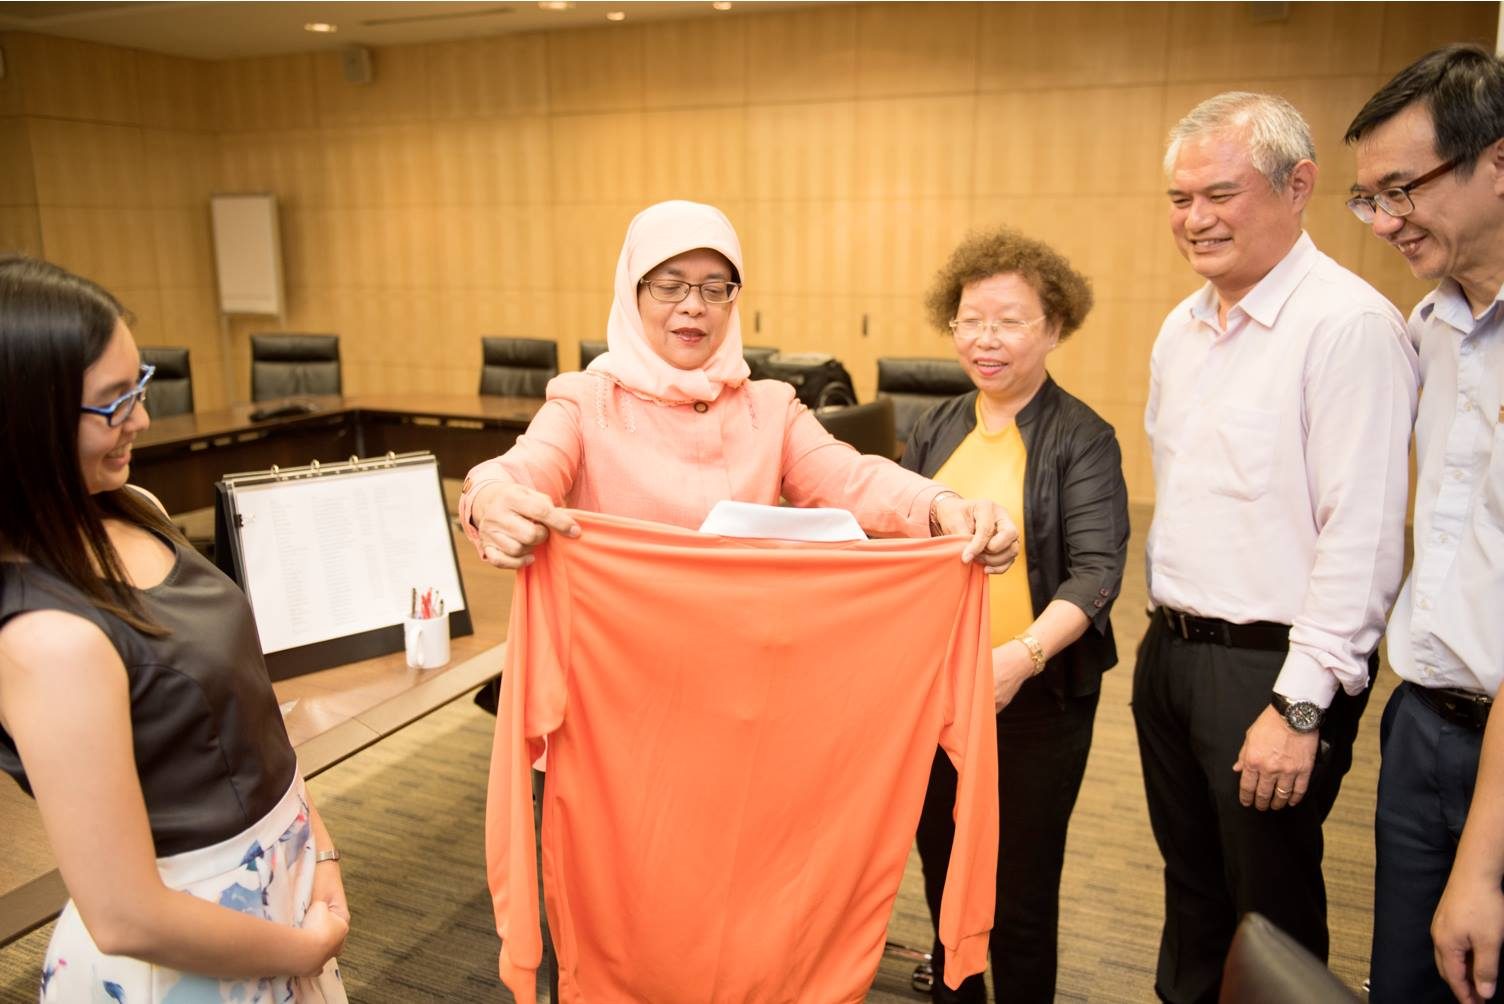 PERSATUAN. Presiden Singapura terpilih Halimah Yacob memegang kemeja berwarna orange yang melambangkan persatuan. Foto diambil dari akun Facebook Halimah Yacob 